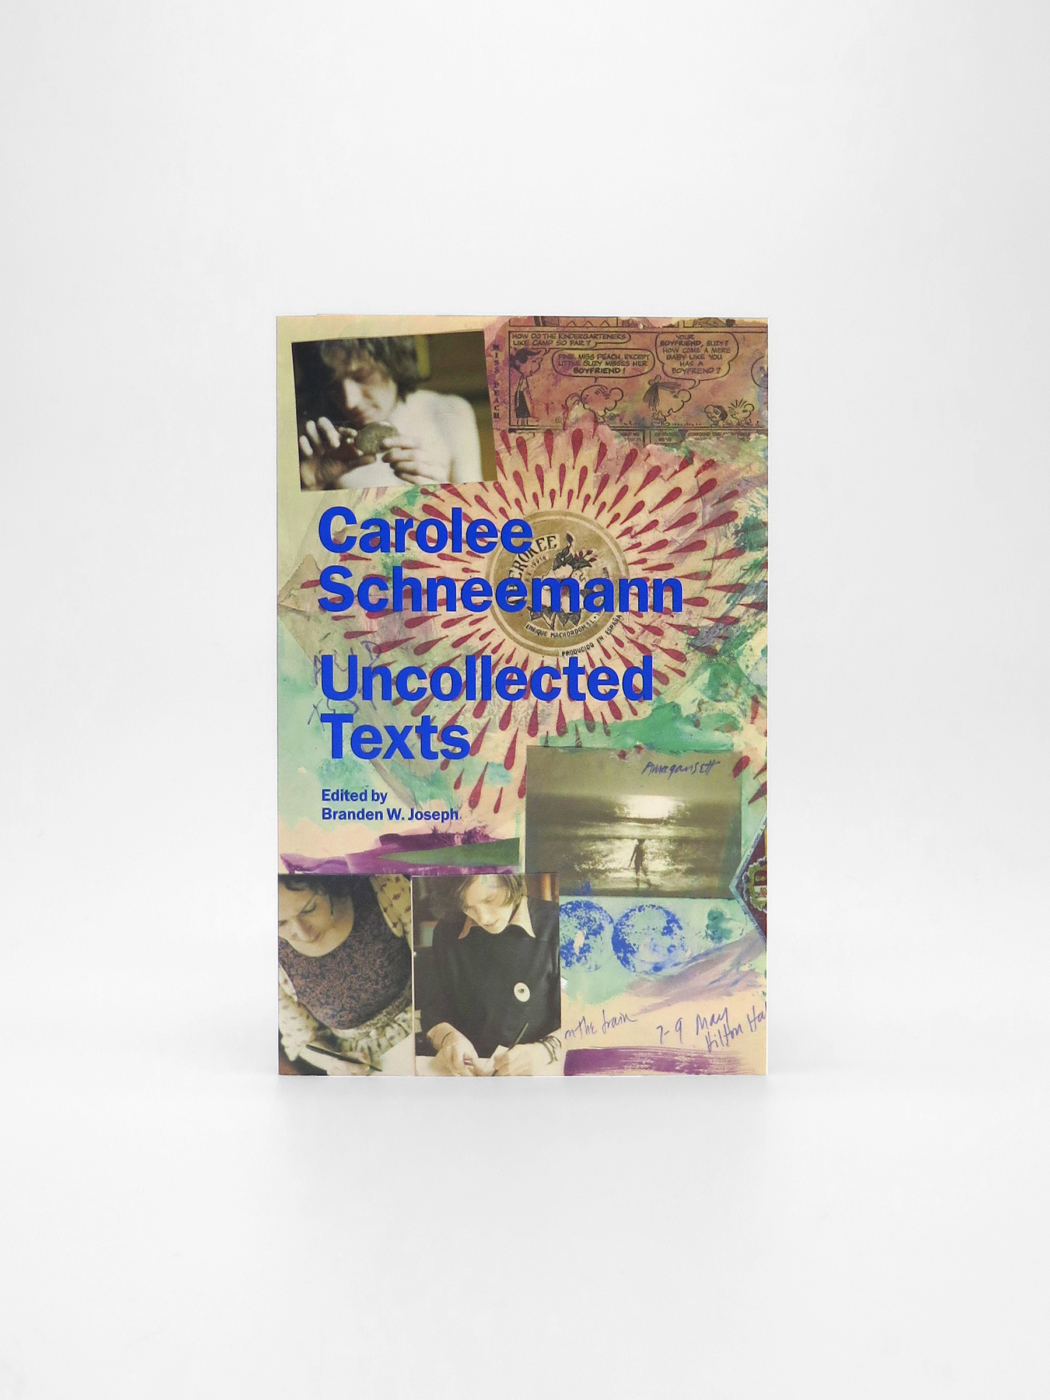 Carolee Schneemann, Uncollected Texts